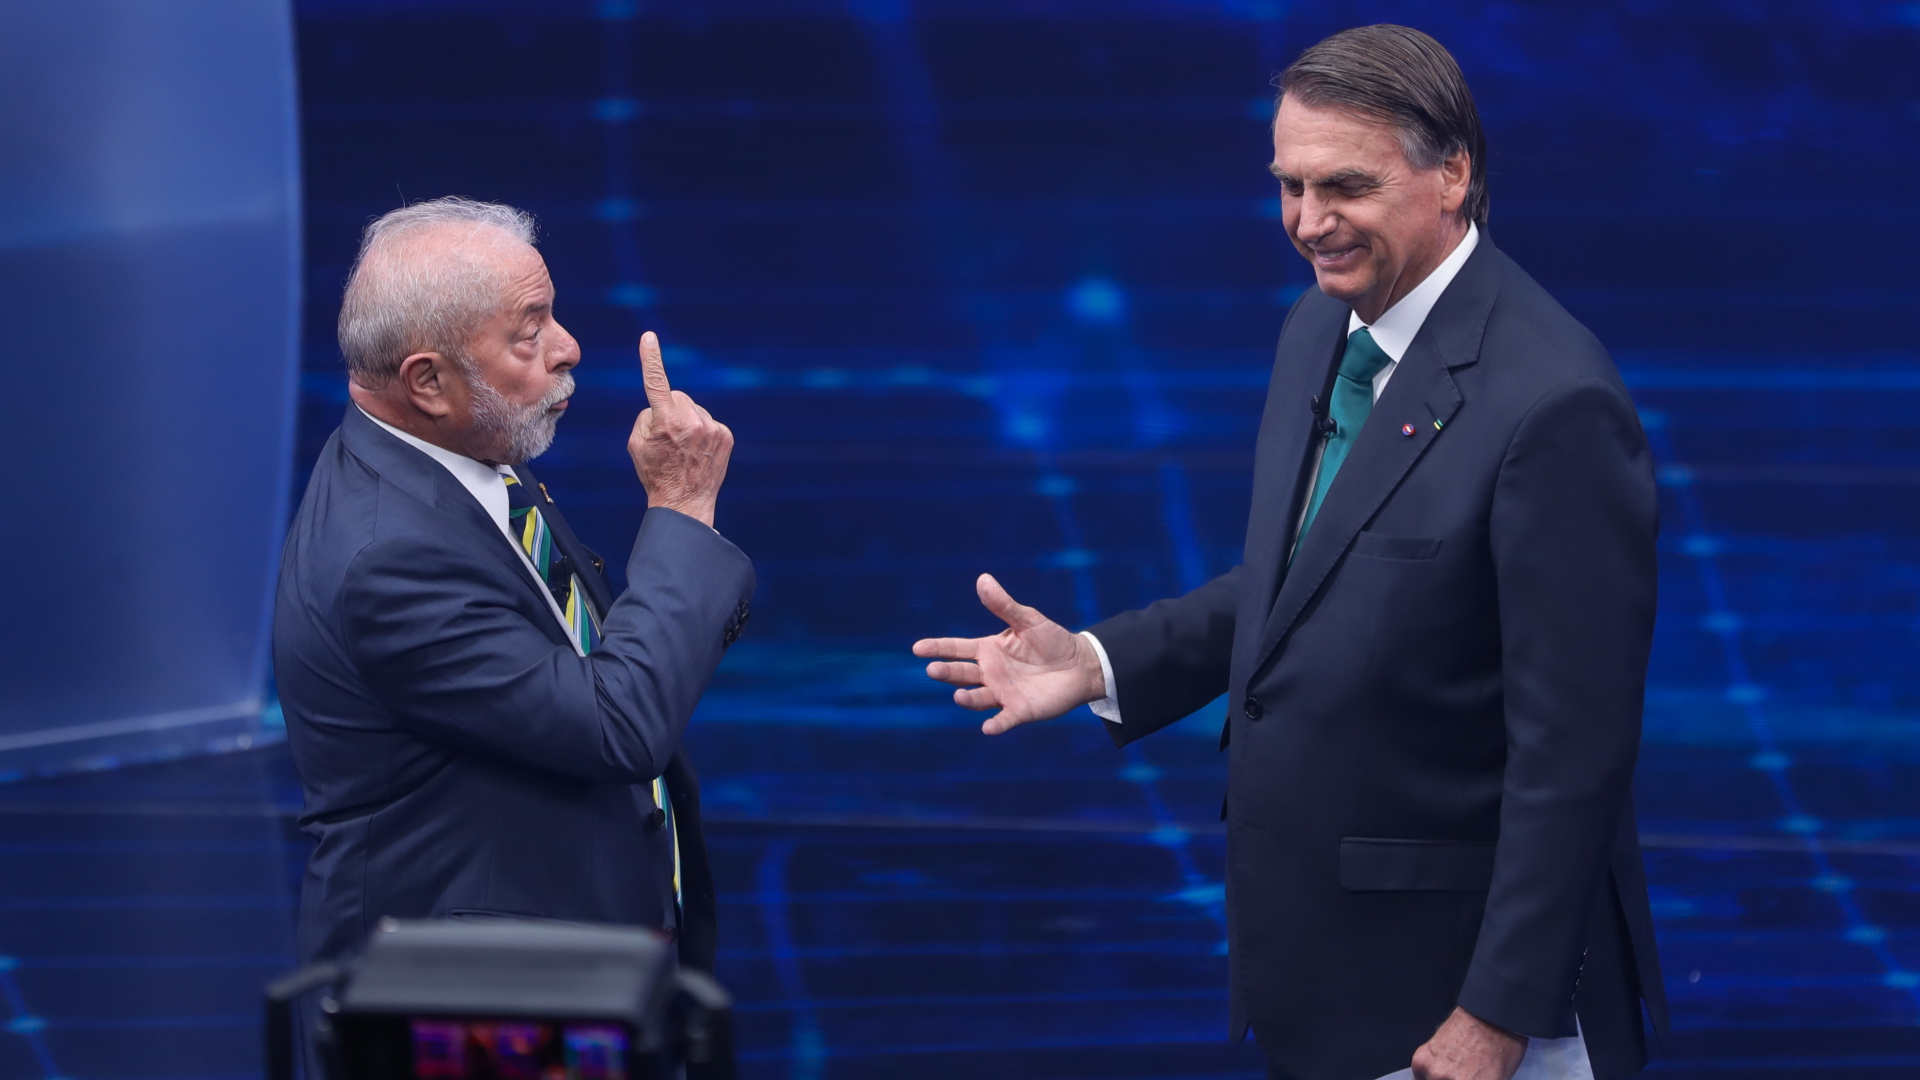  Brasiliens ehemaliger Präsident Luiz Inacio Lula da Silva (l), der erneut für das Amt kandidiert, steht neben Jair Bolsonaro, Präsident von Brasilien, in einer Präsidentschaftsdebatte im Fernsehsender Bandeirantes gegenüber.